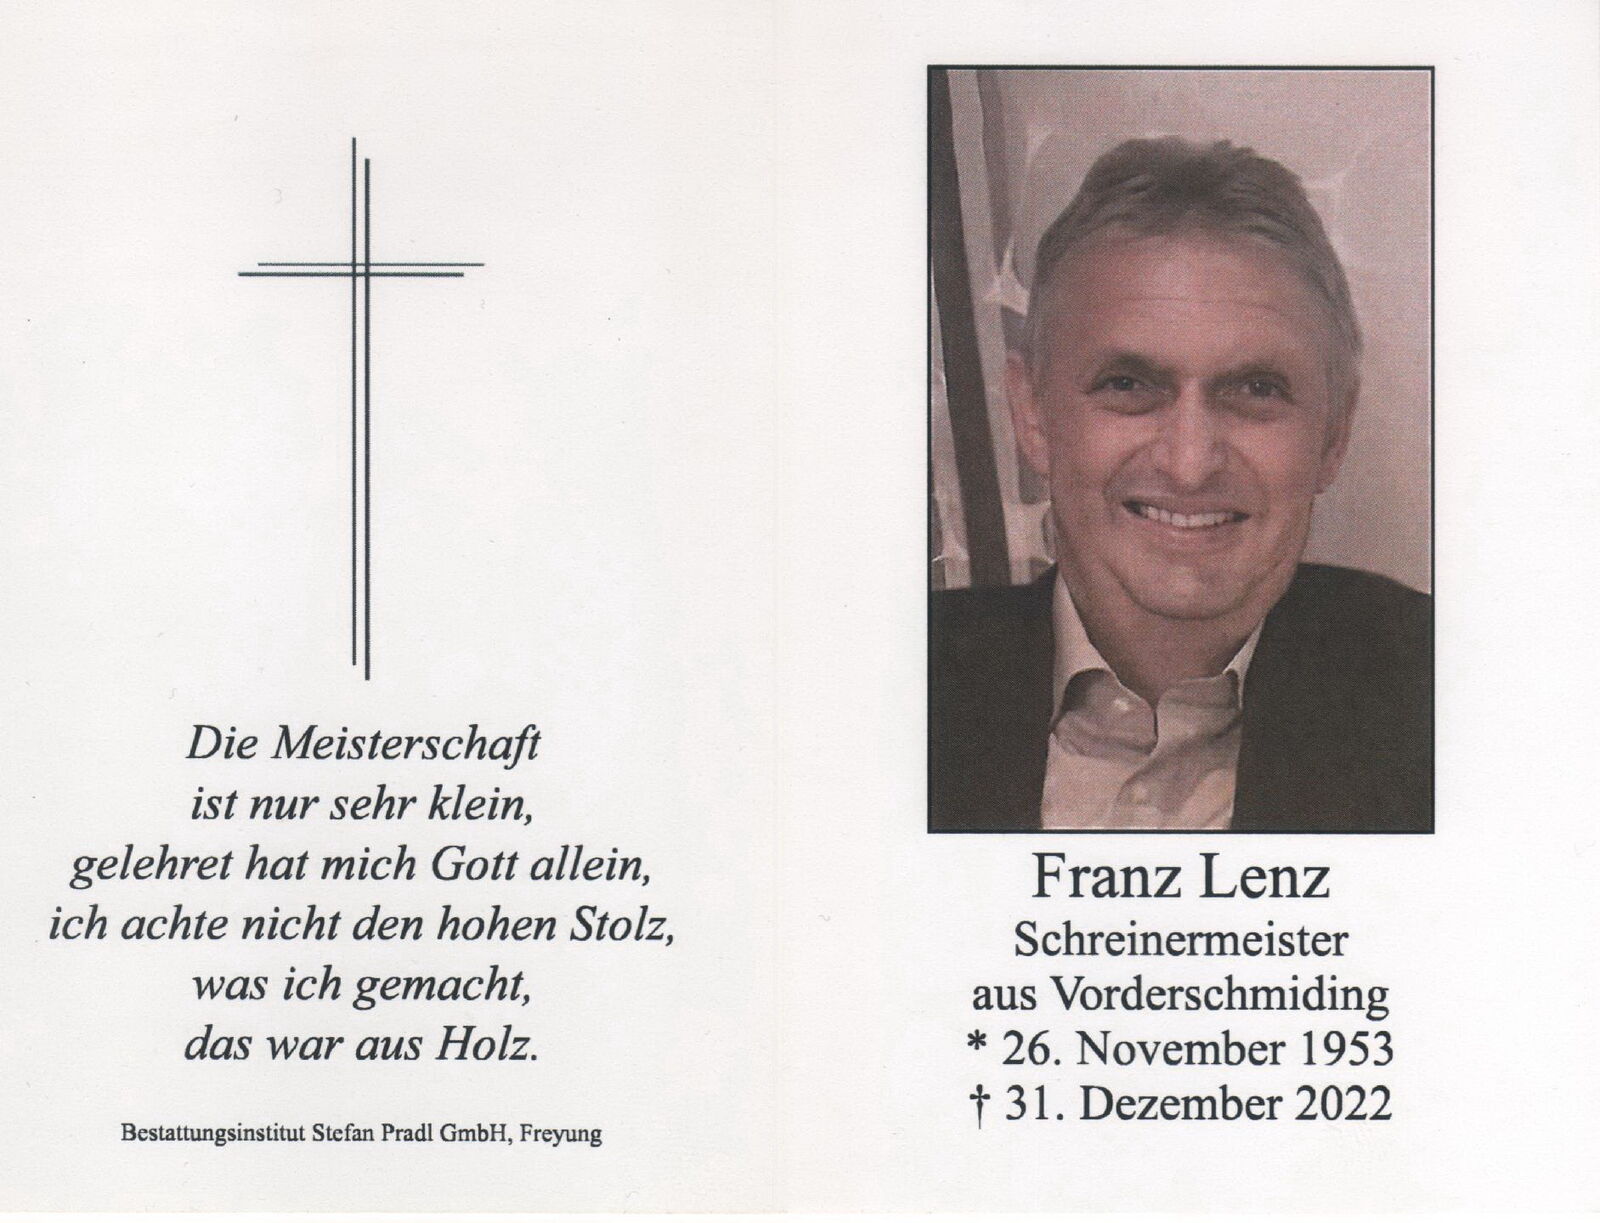 Lenz Franz